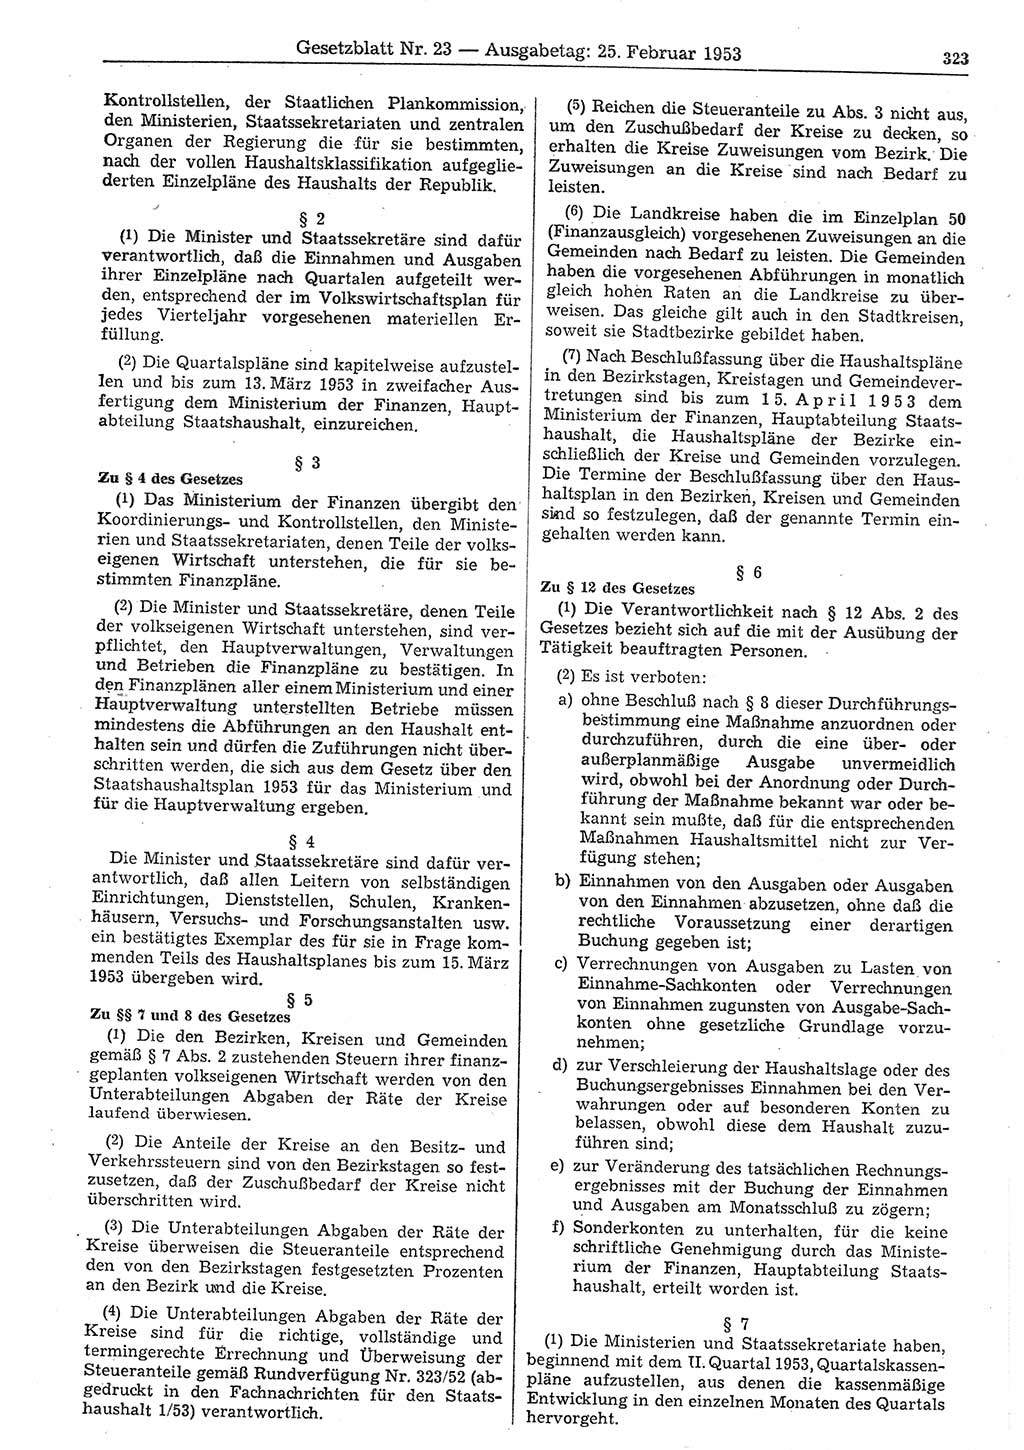 Gesetzblatt (GBl.) der Deutschen Demokratischen Republik (DDR) 1953, Seite 323 (GBl. DDR 1953, S. 323)